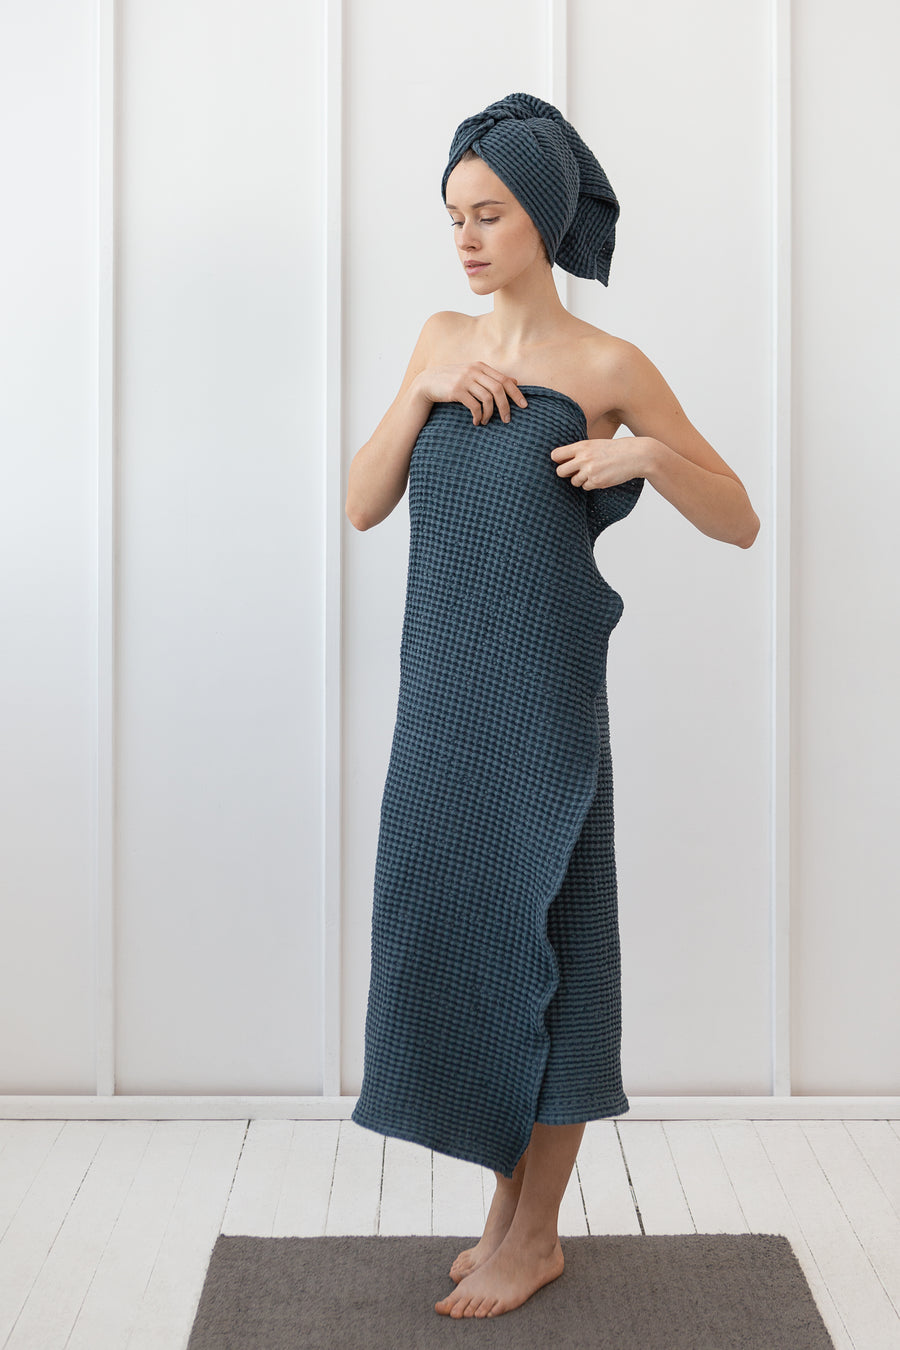 Light Grey linen waffle towels set - Linen Couture Boutique